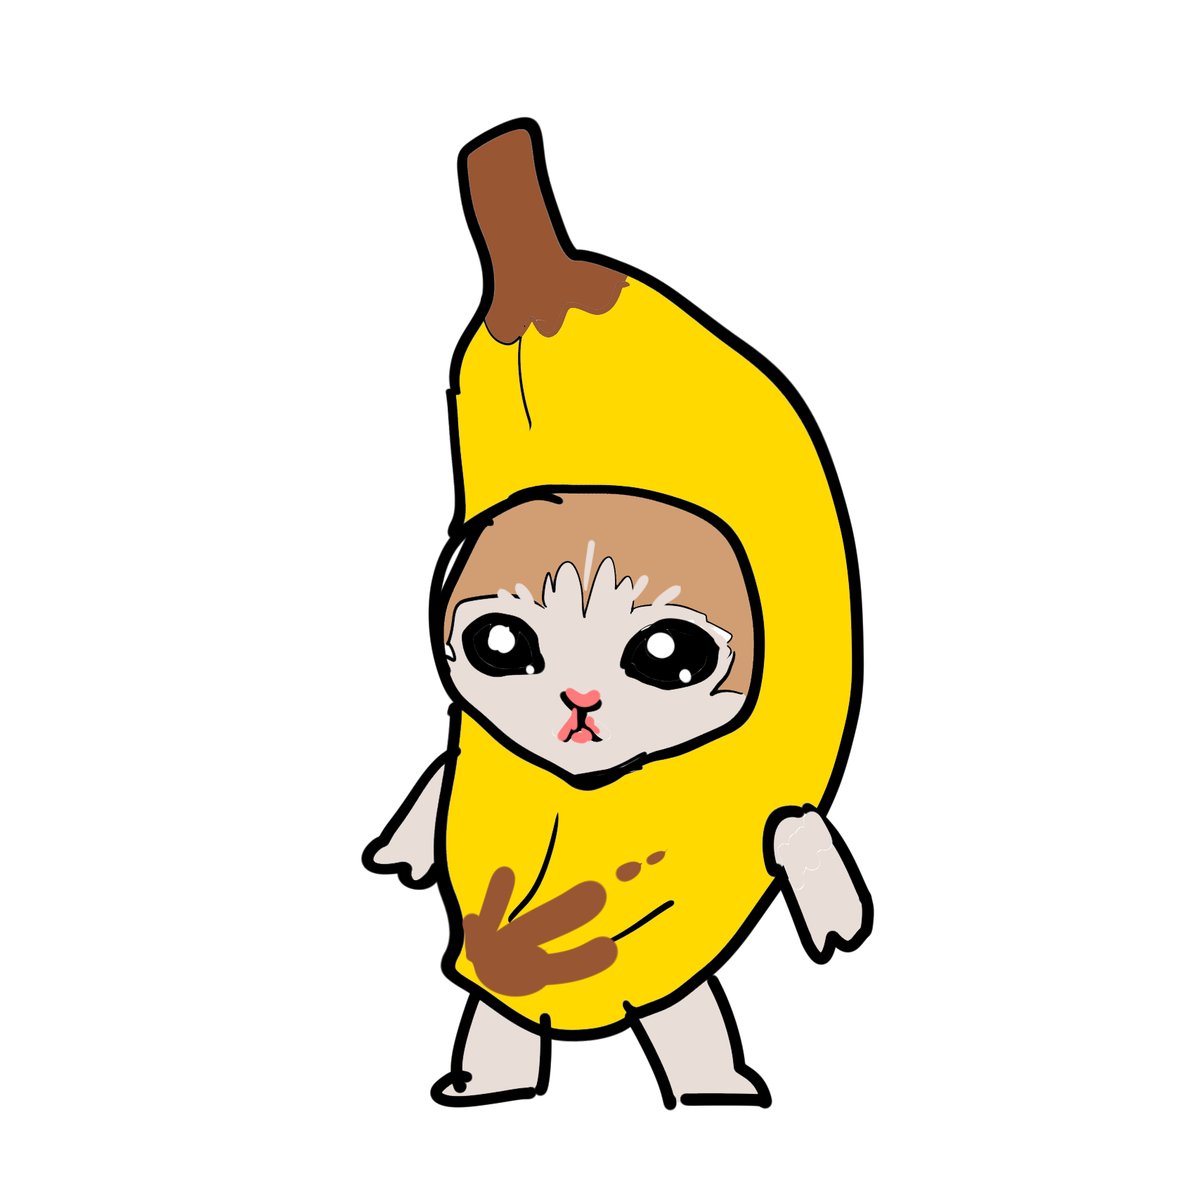 「 バナナ猫です」|OKADAのイラスト